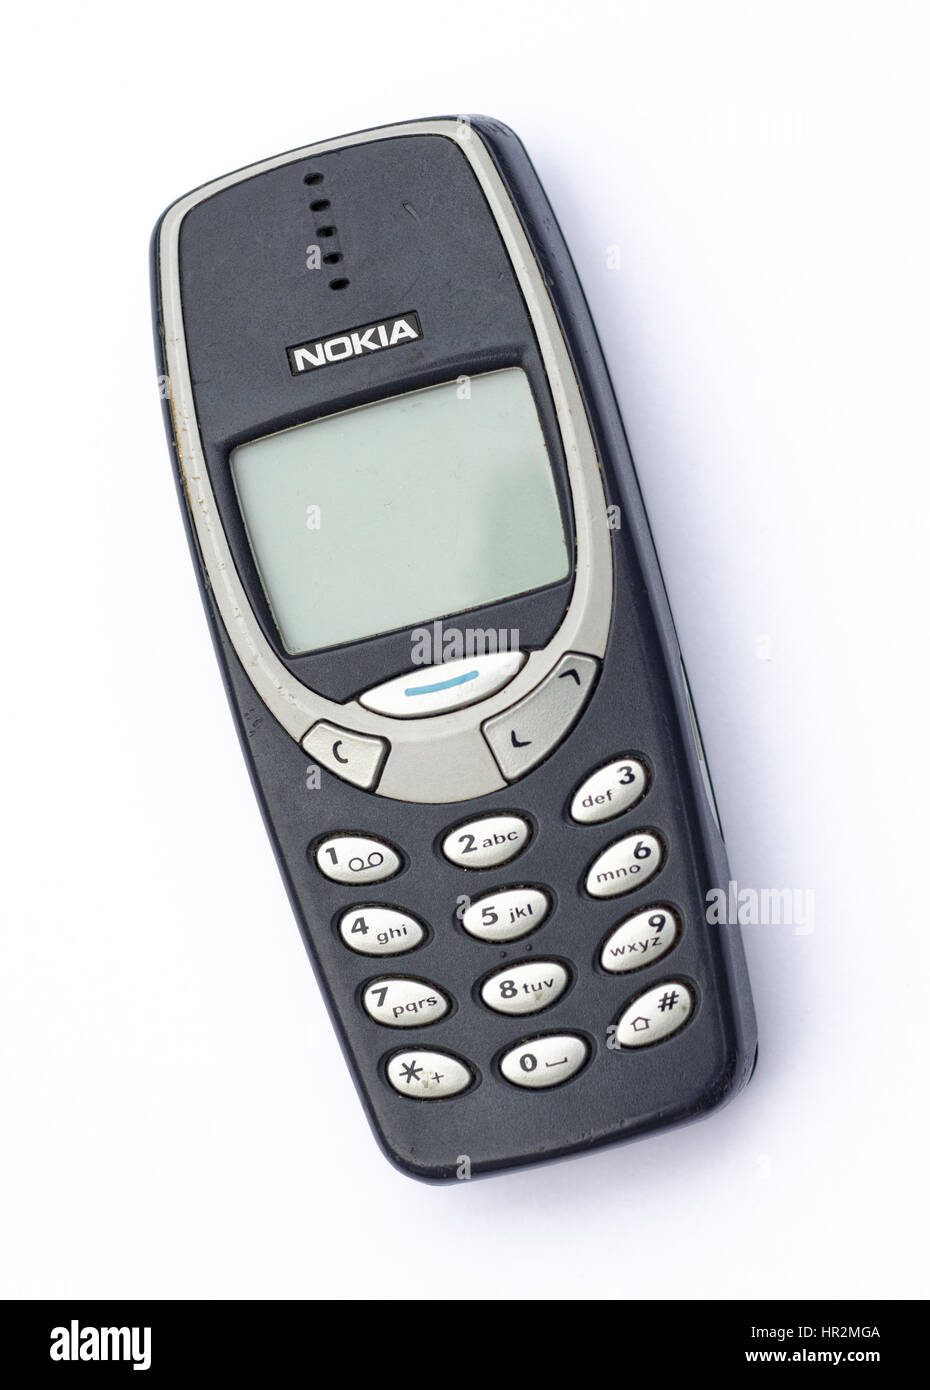 Nokia 3310 teléfono móvil, uno de los teléfonos más populares de Nokia Foto de stock